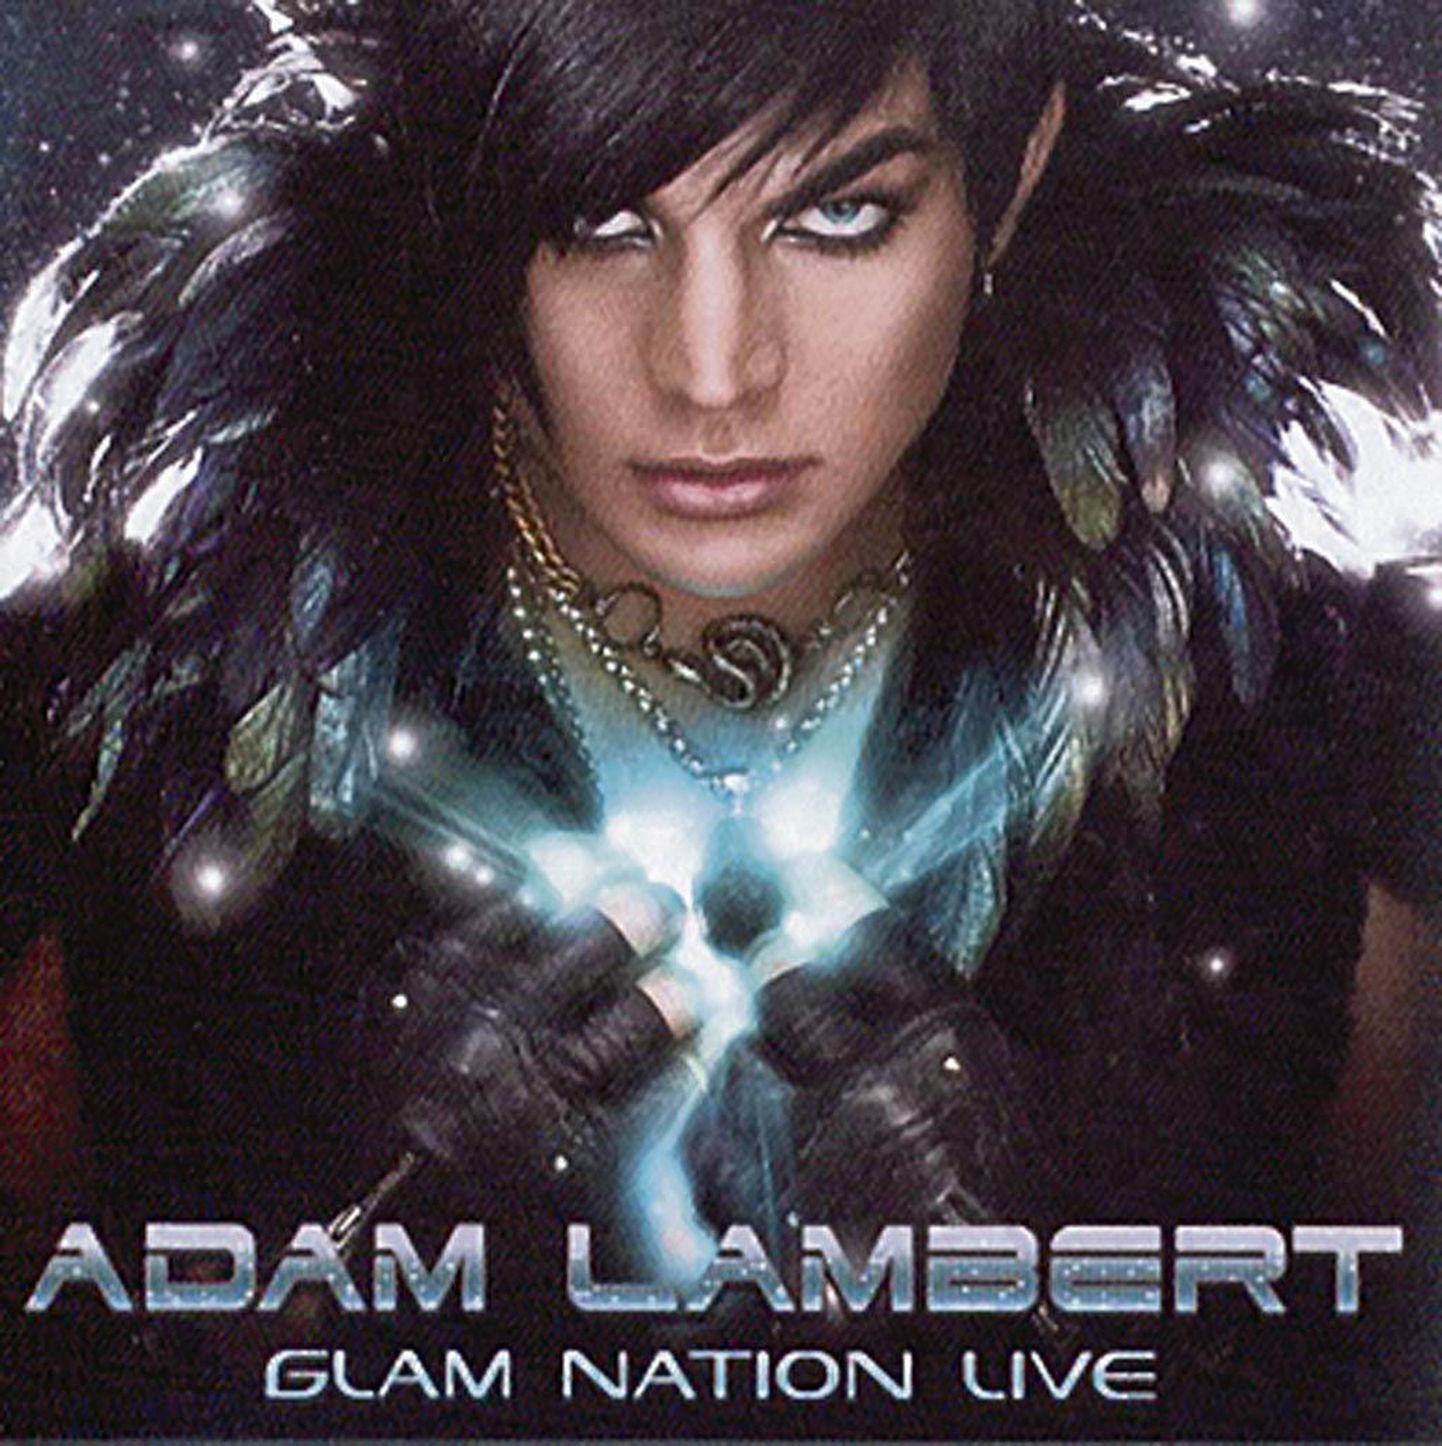 Adam Lambert “Glam Nation Live”.